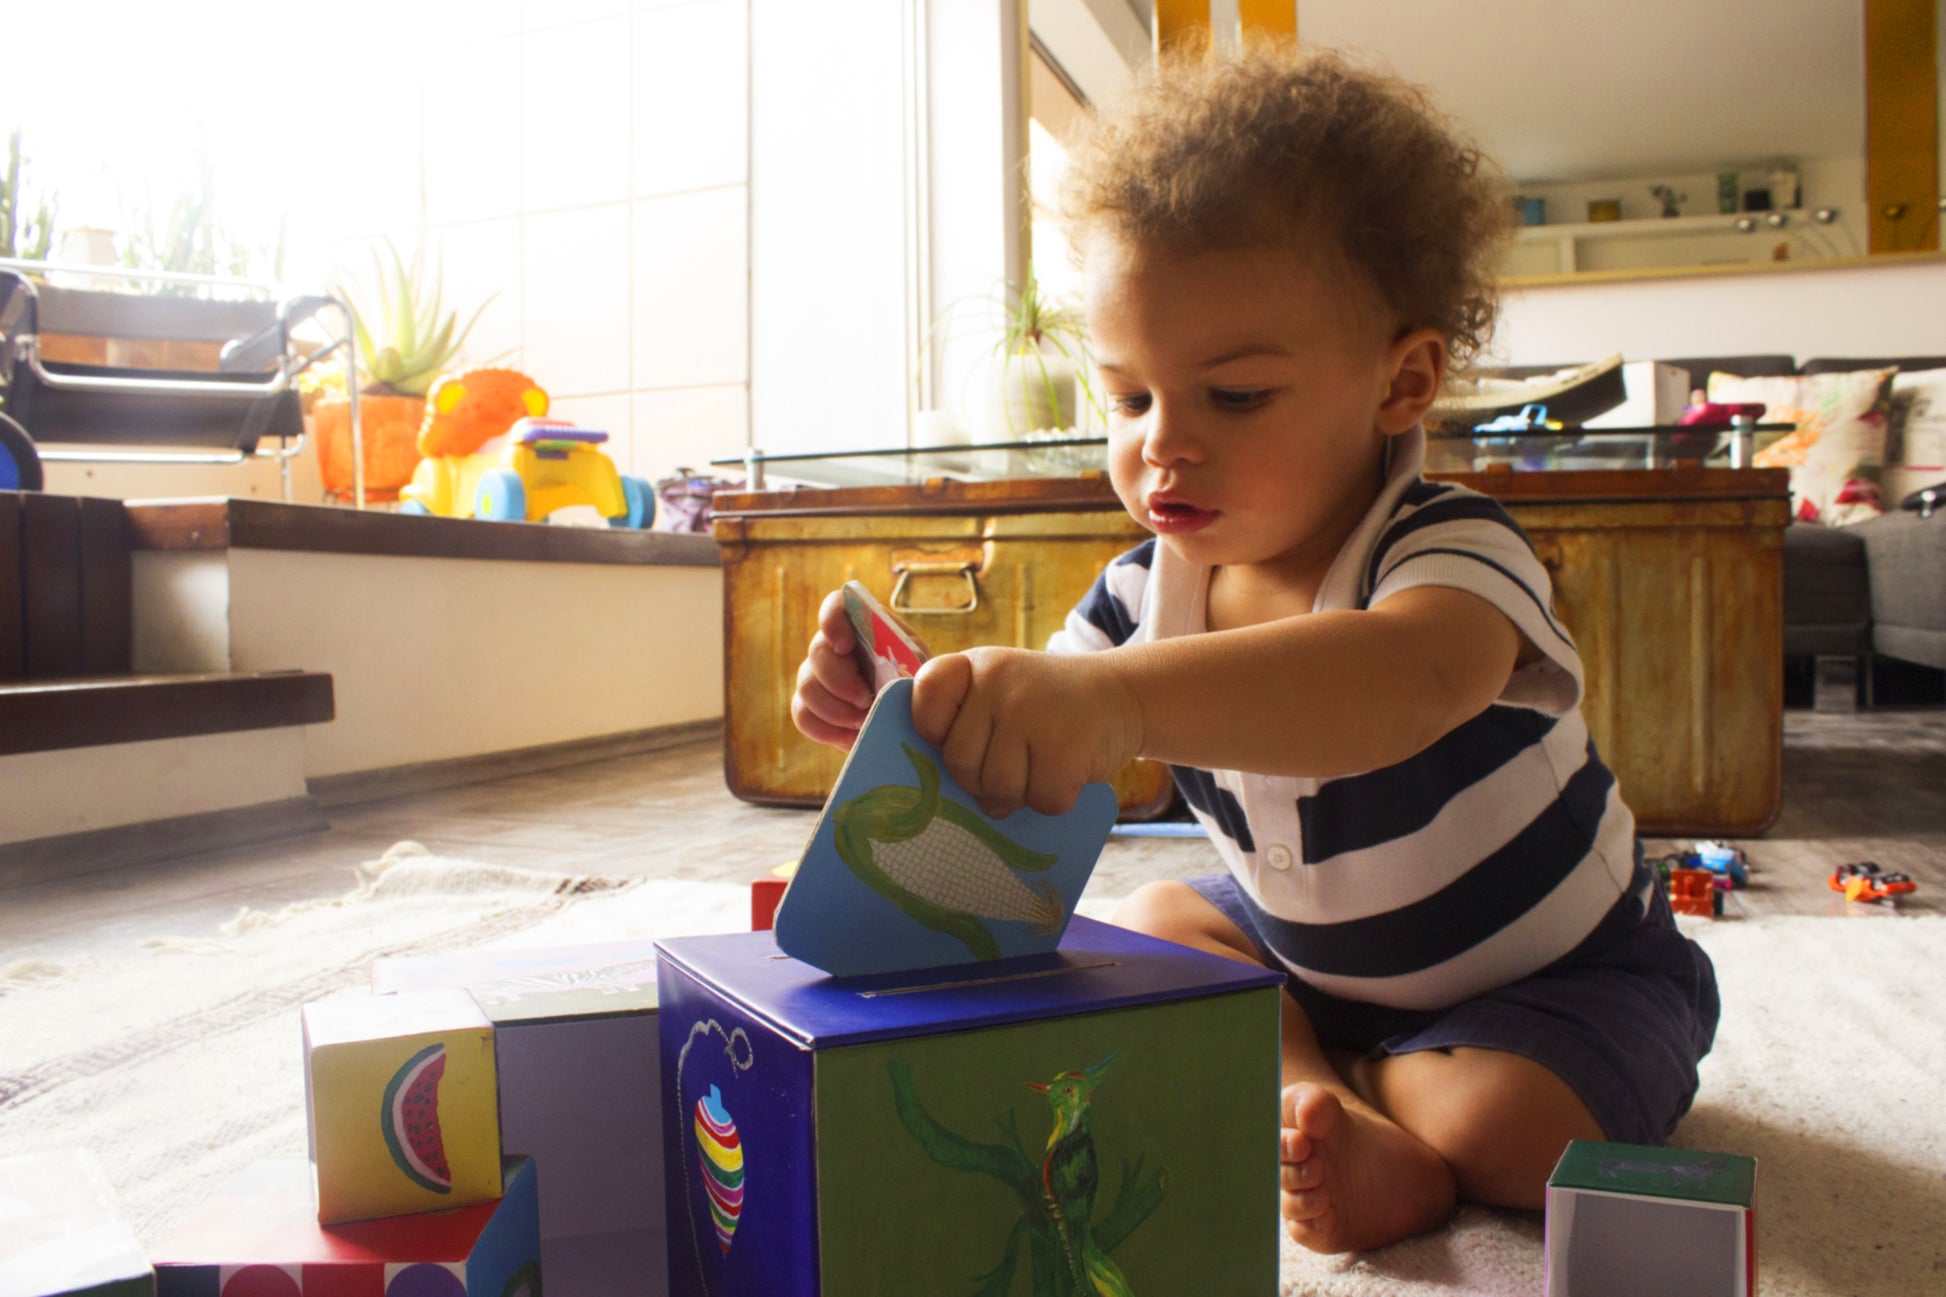 BoxArt helps children developed fine and gross motor skills.